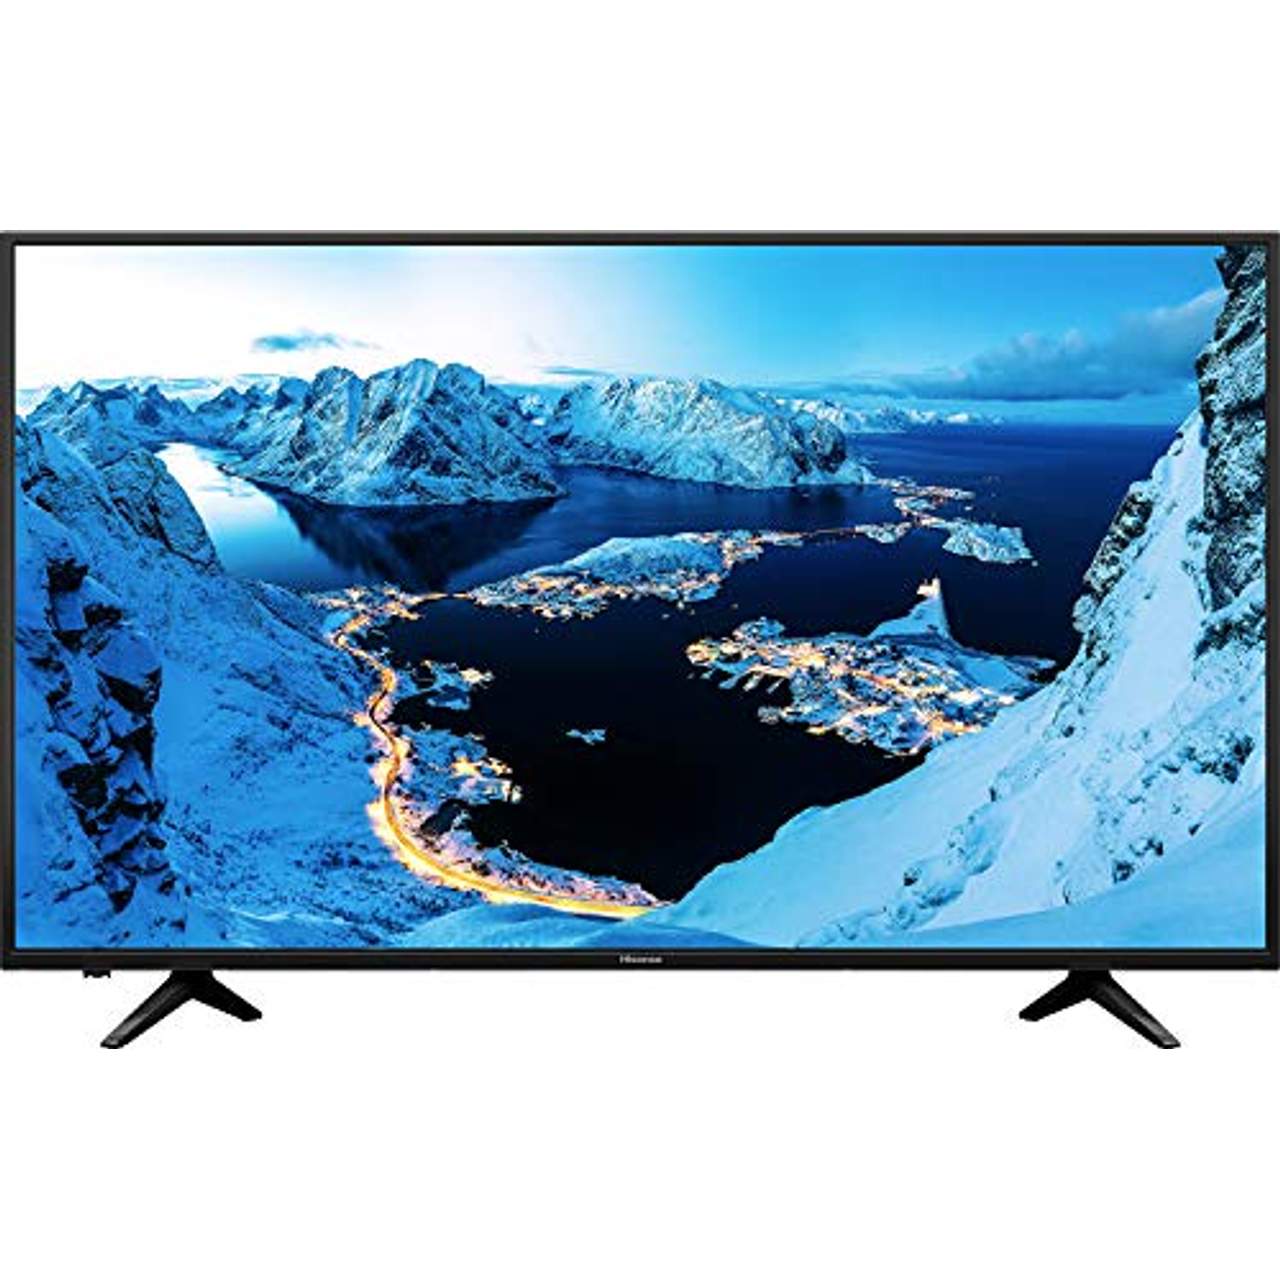 Hisense H50AE6030 4K UHD TV 126 cm